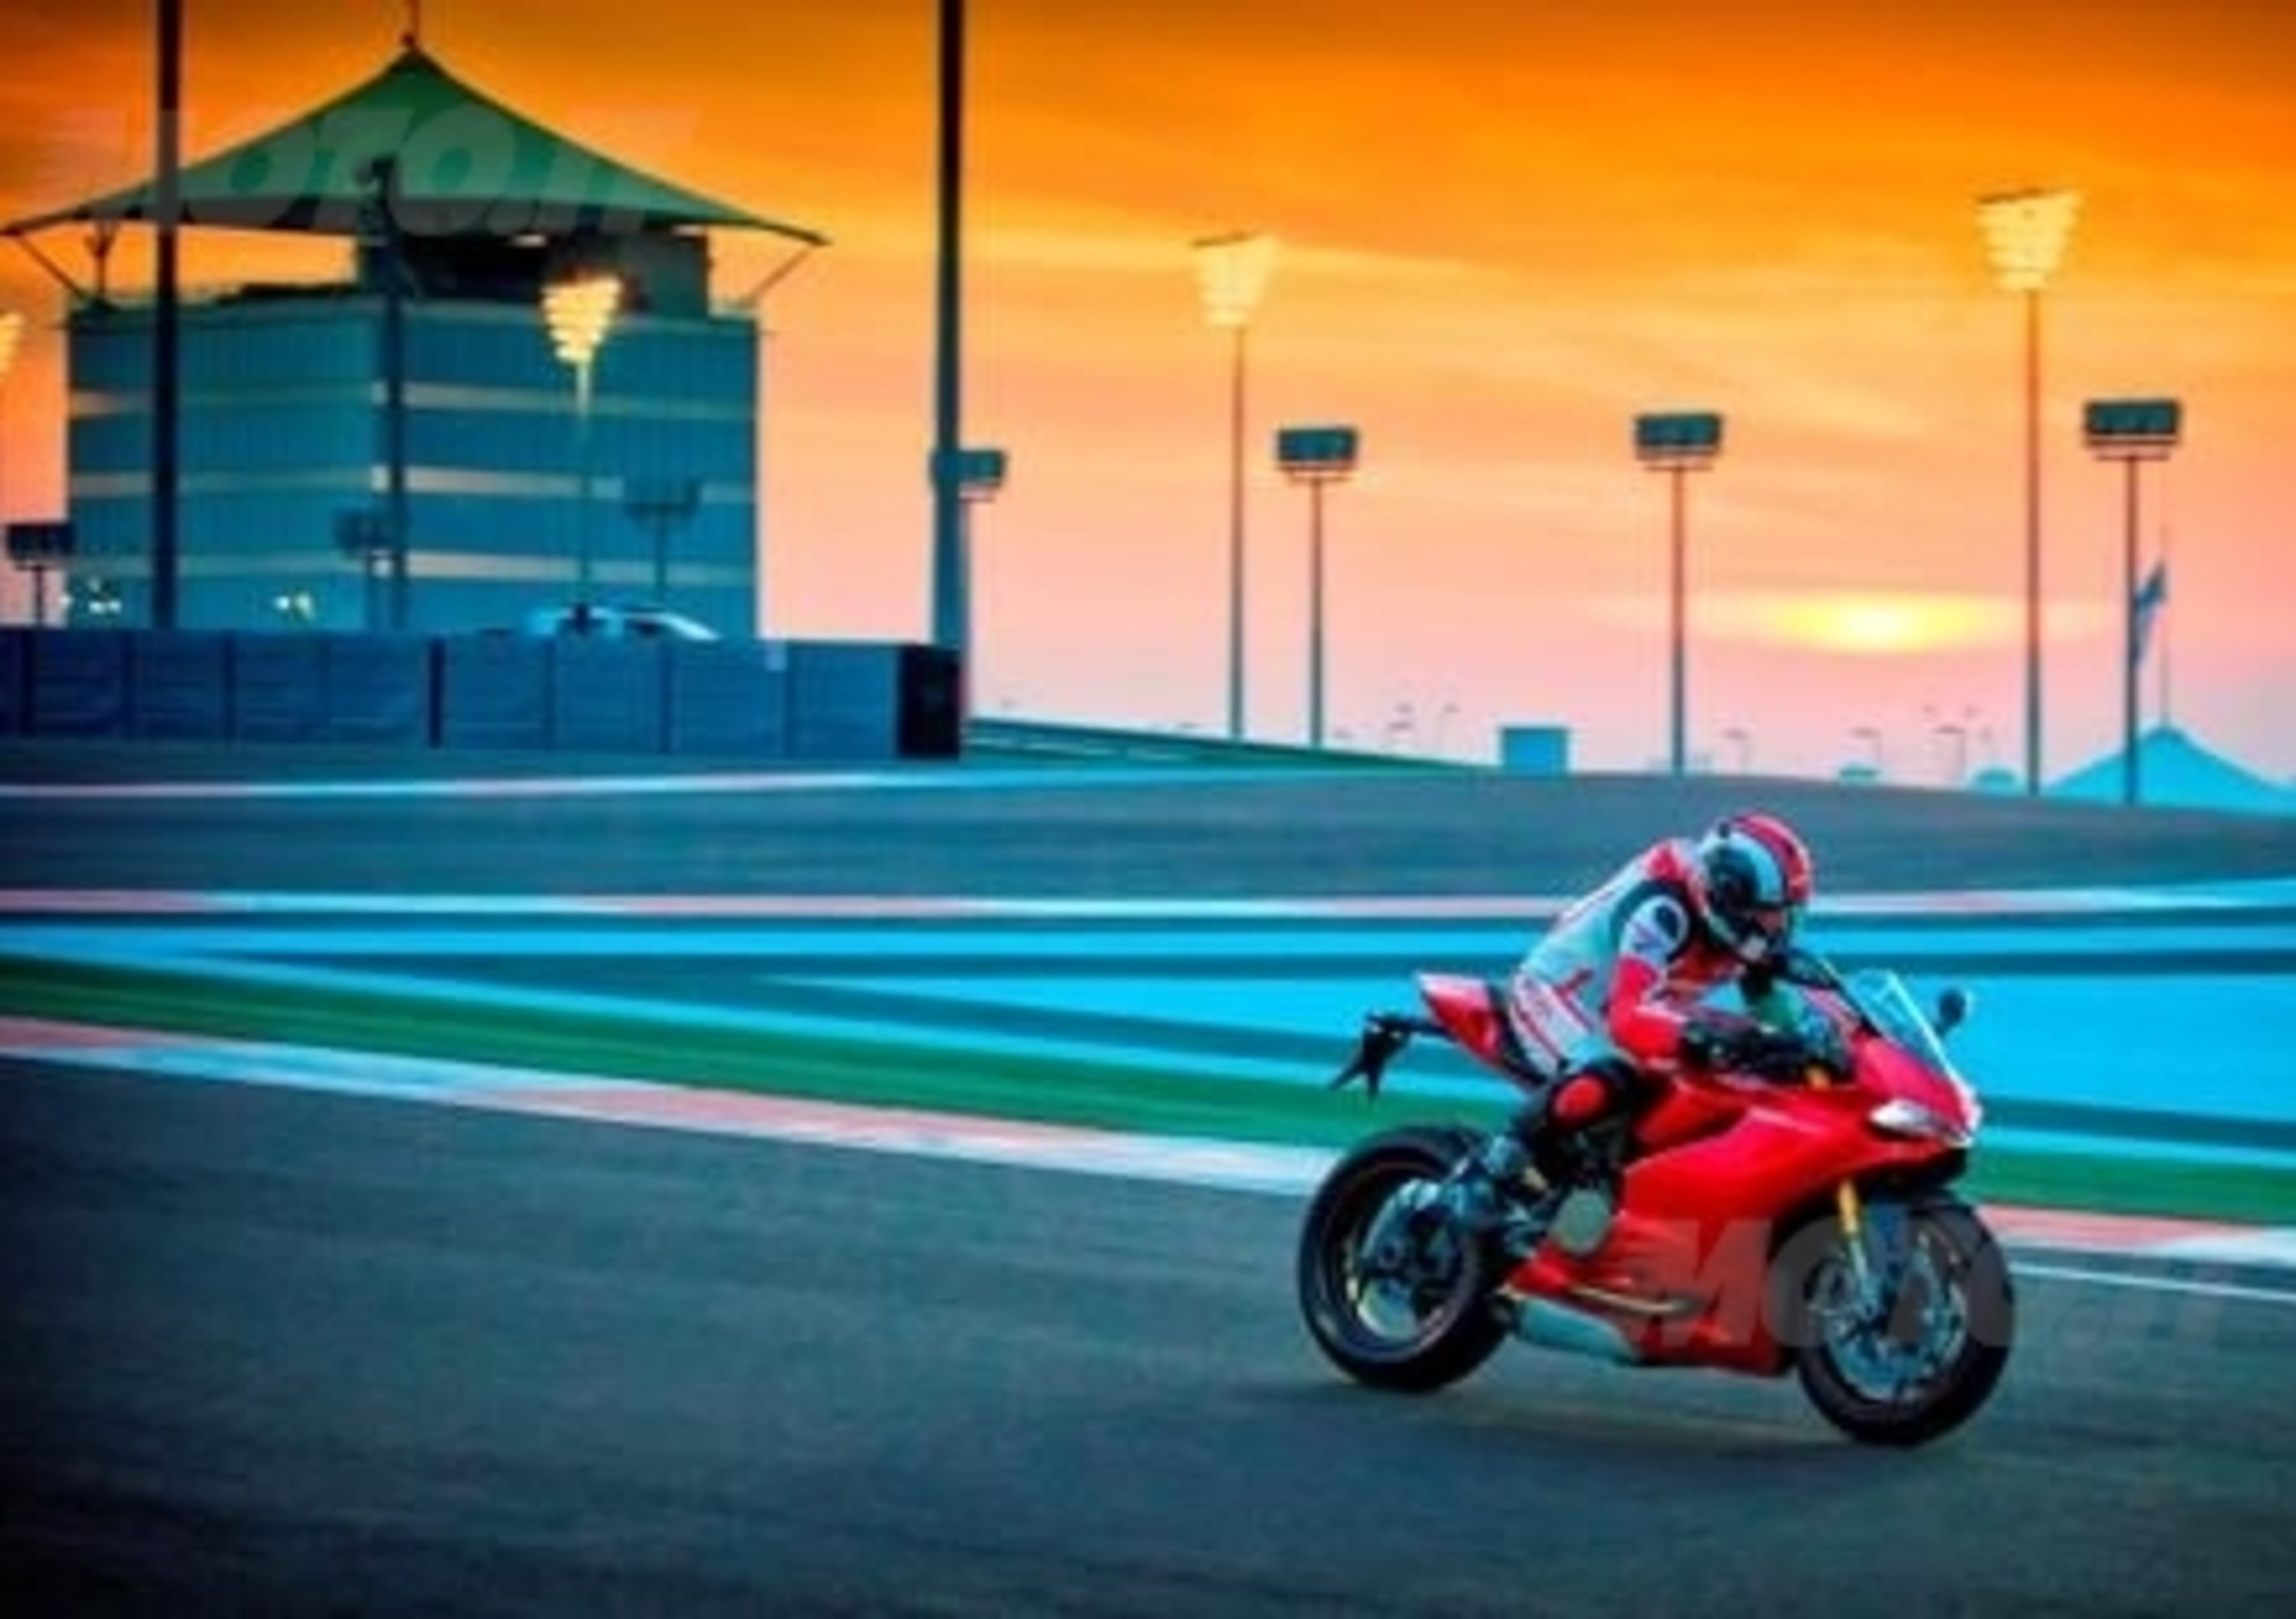 Torna il Ducati Riding Experience sul circuito di Abu Dhabi